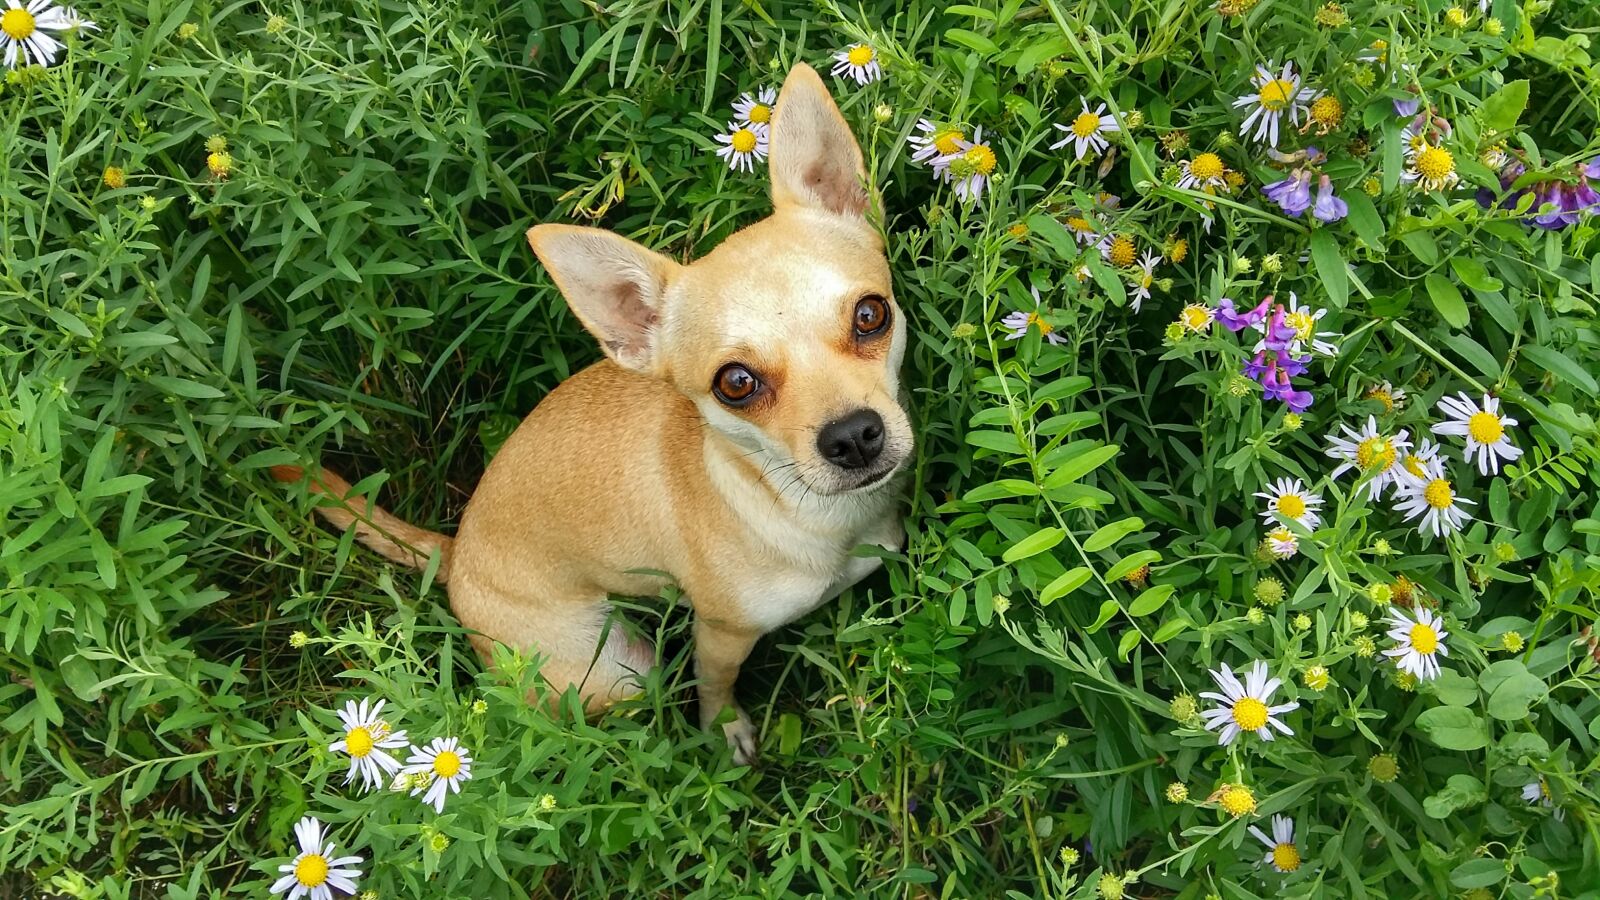 Samsung Galaxy A5 sample photo. Dog, grass, summer photography